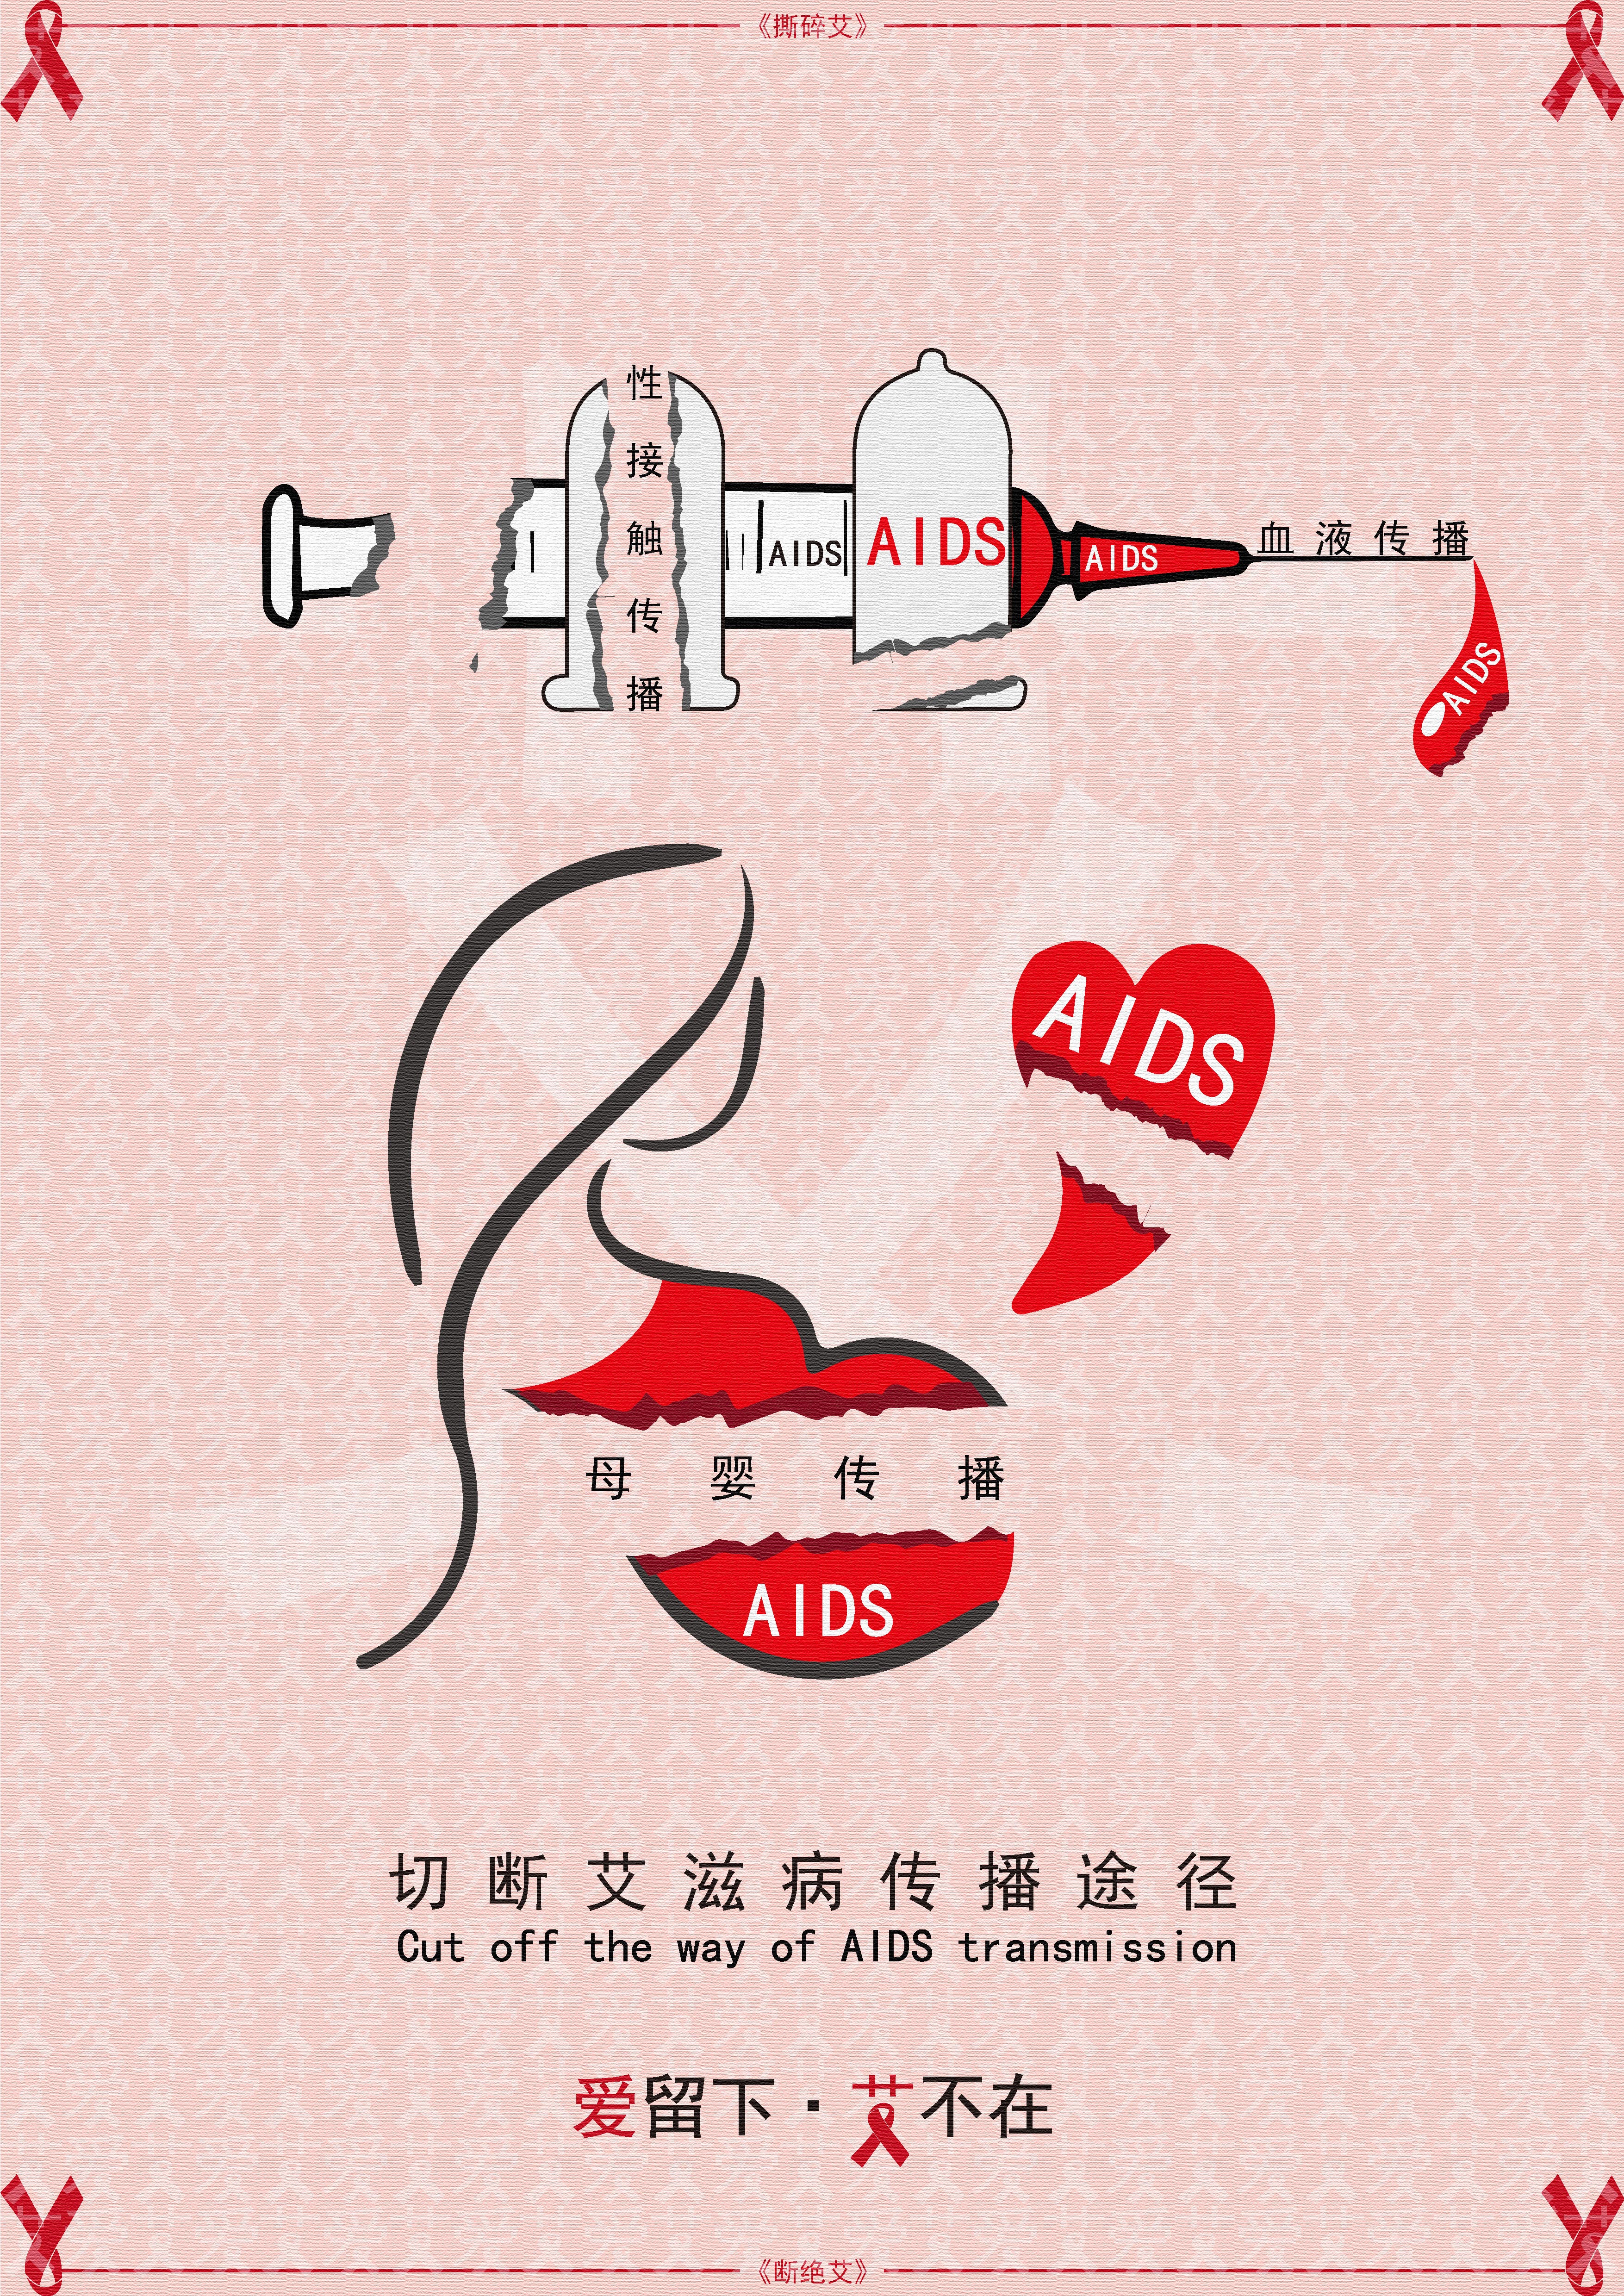 艾滋病宣传海报(获奖作品)